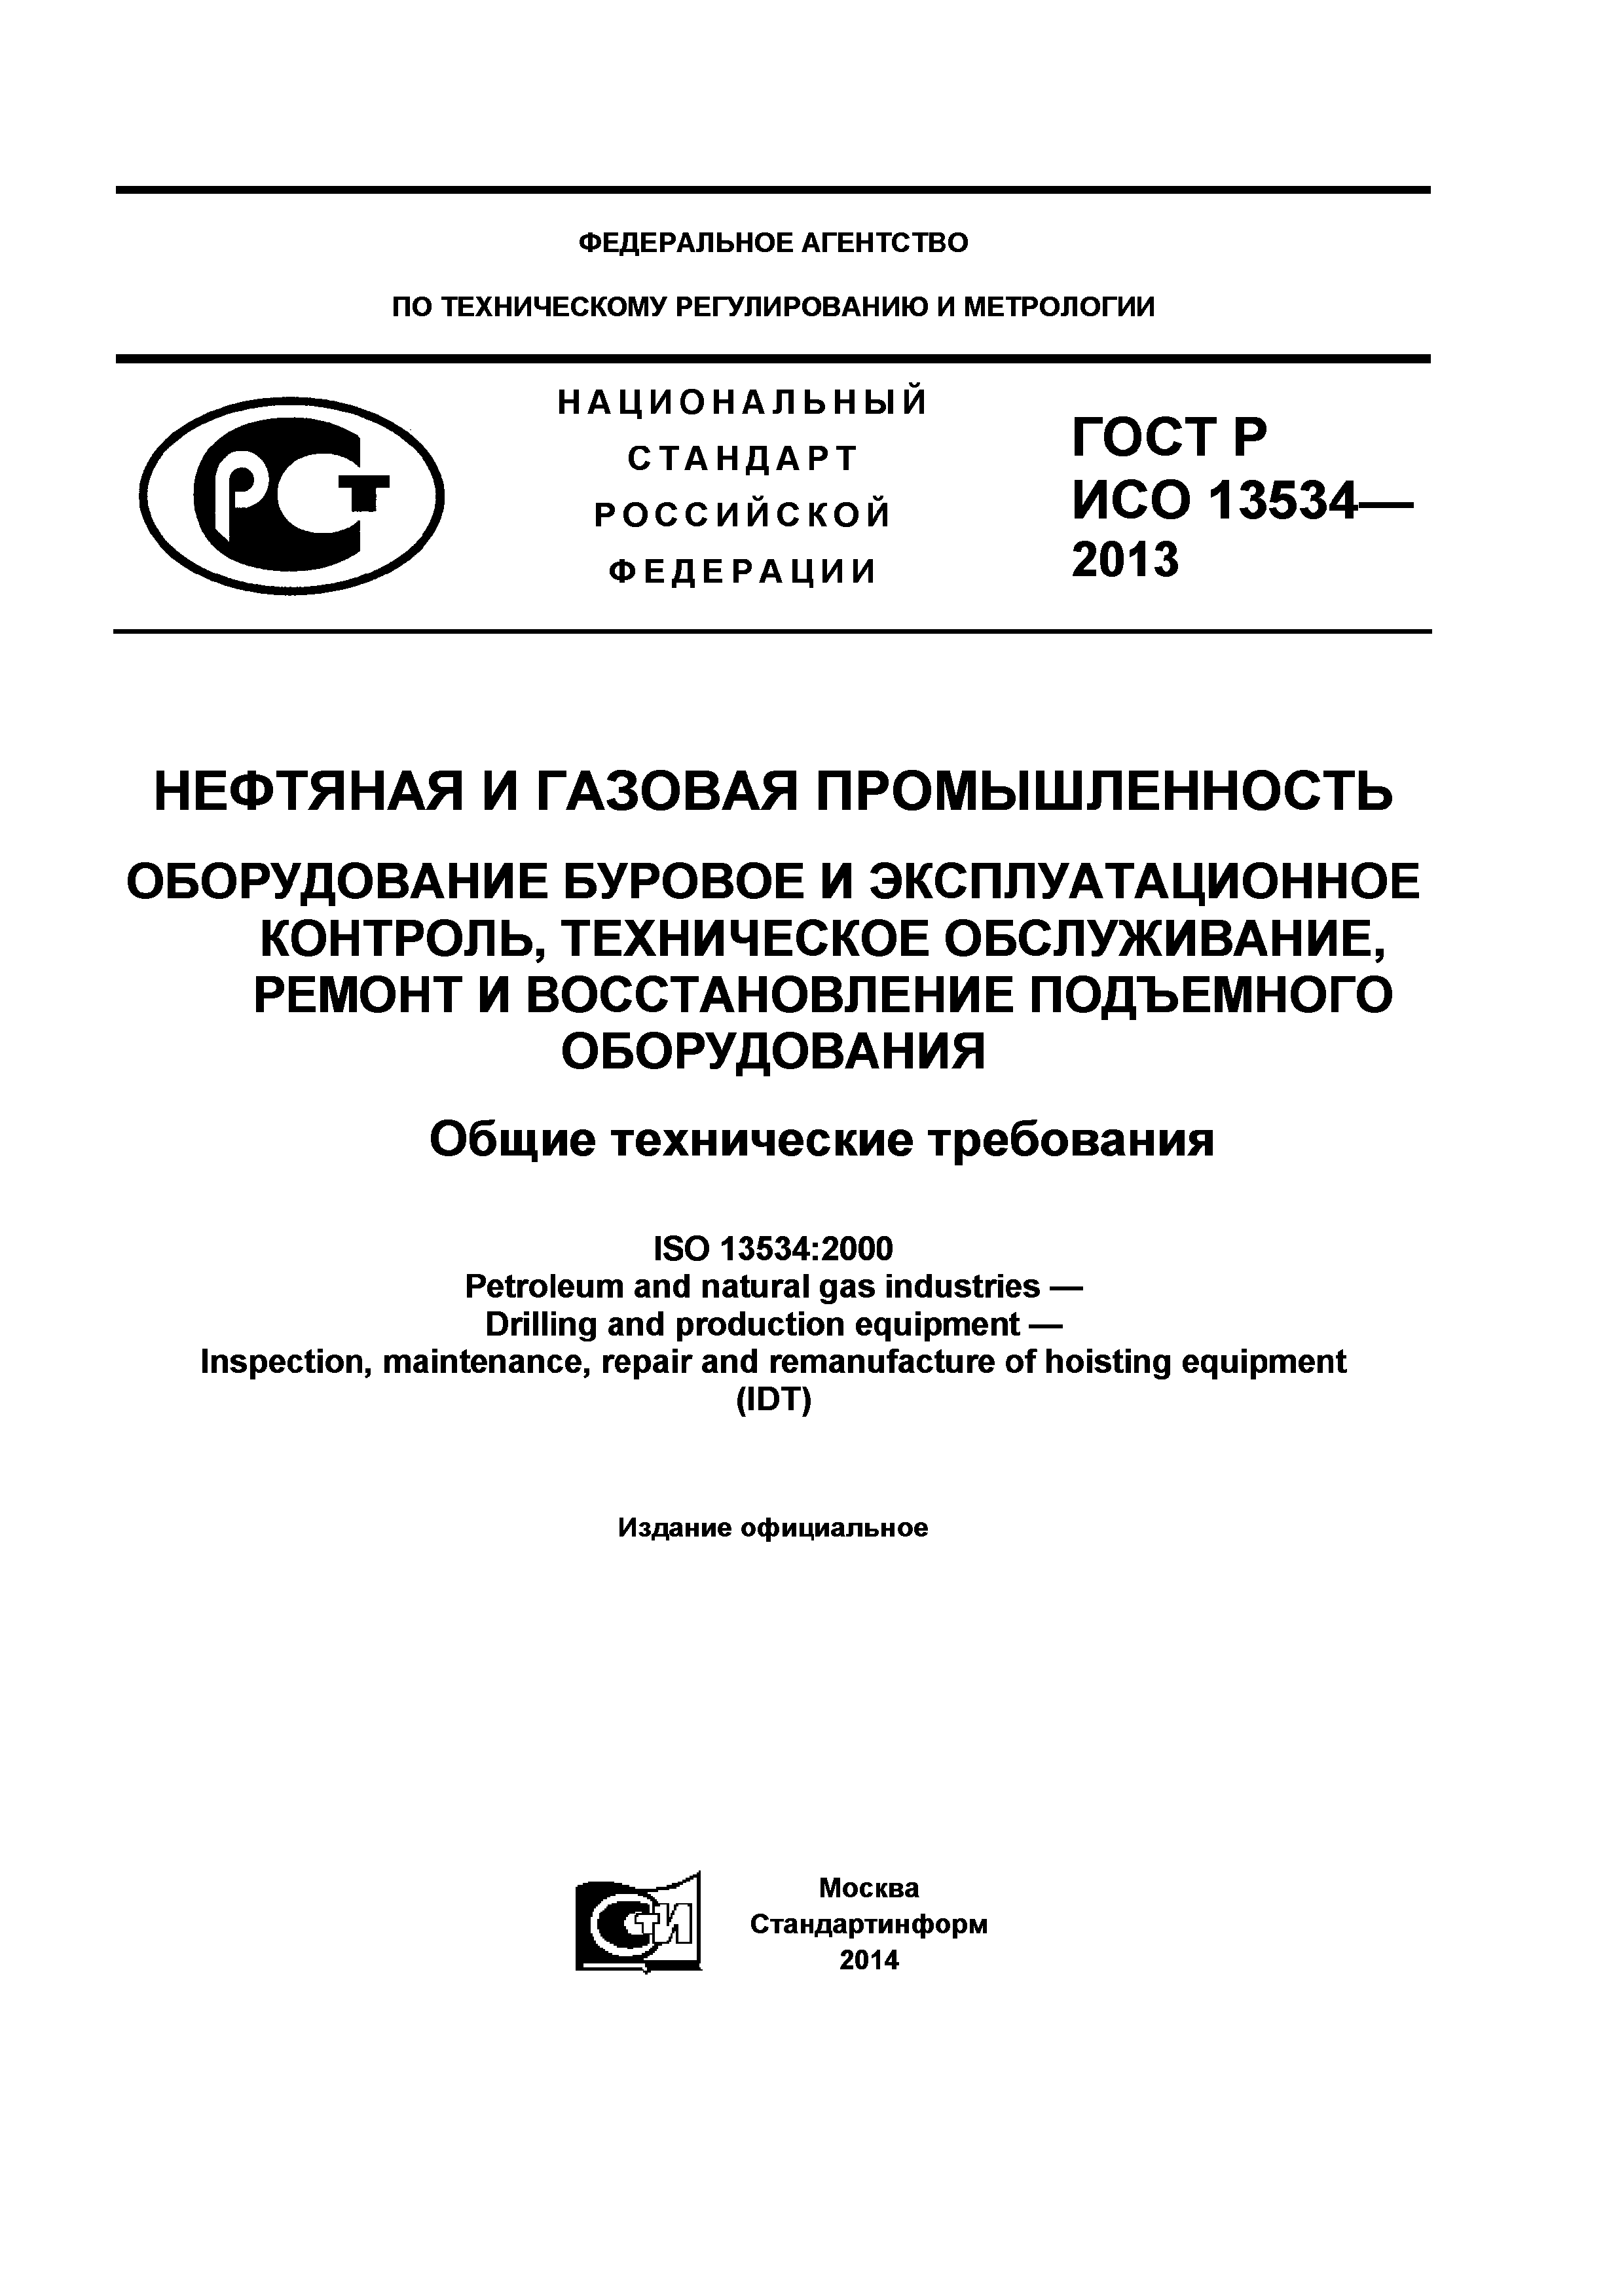 ГОСТ Р ИСО 13534-2013